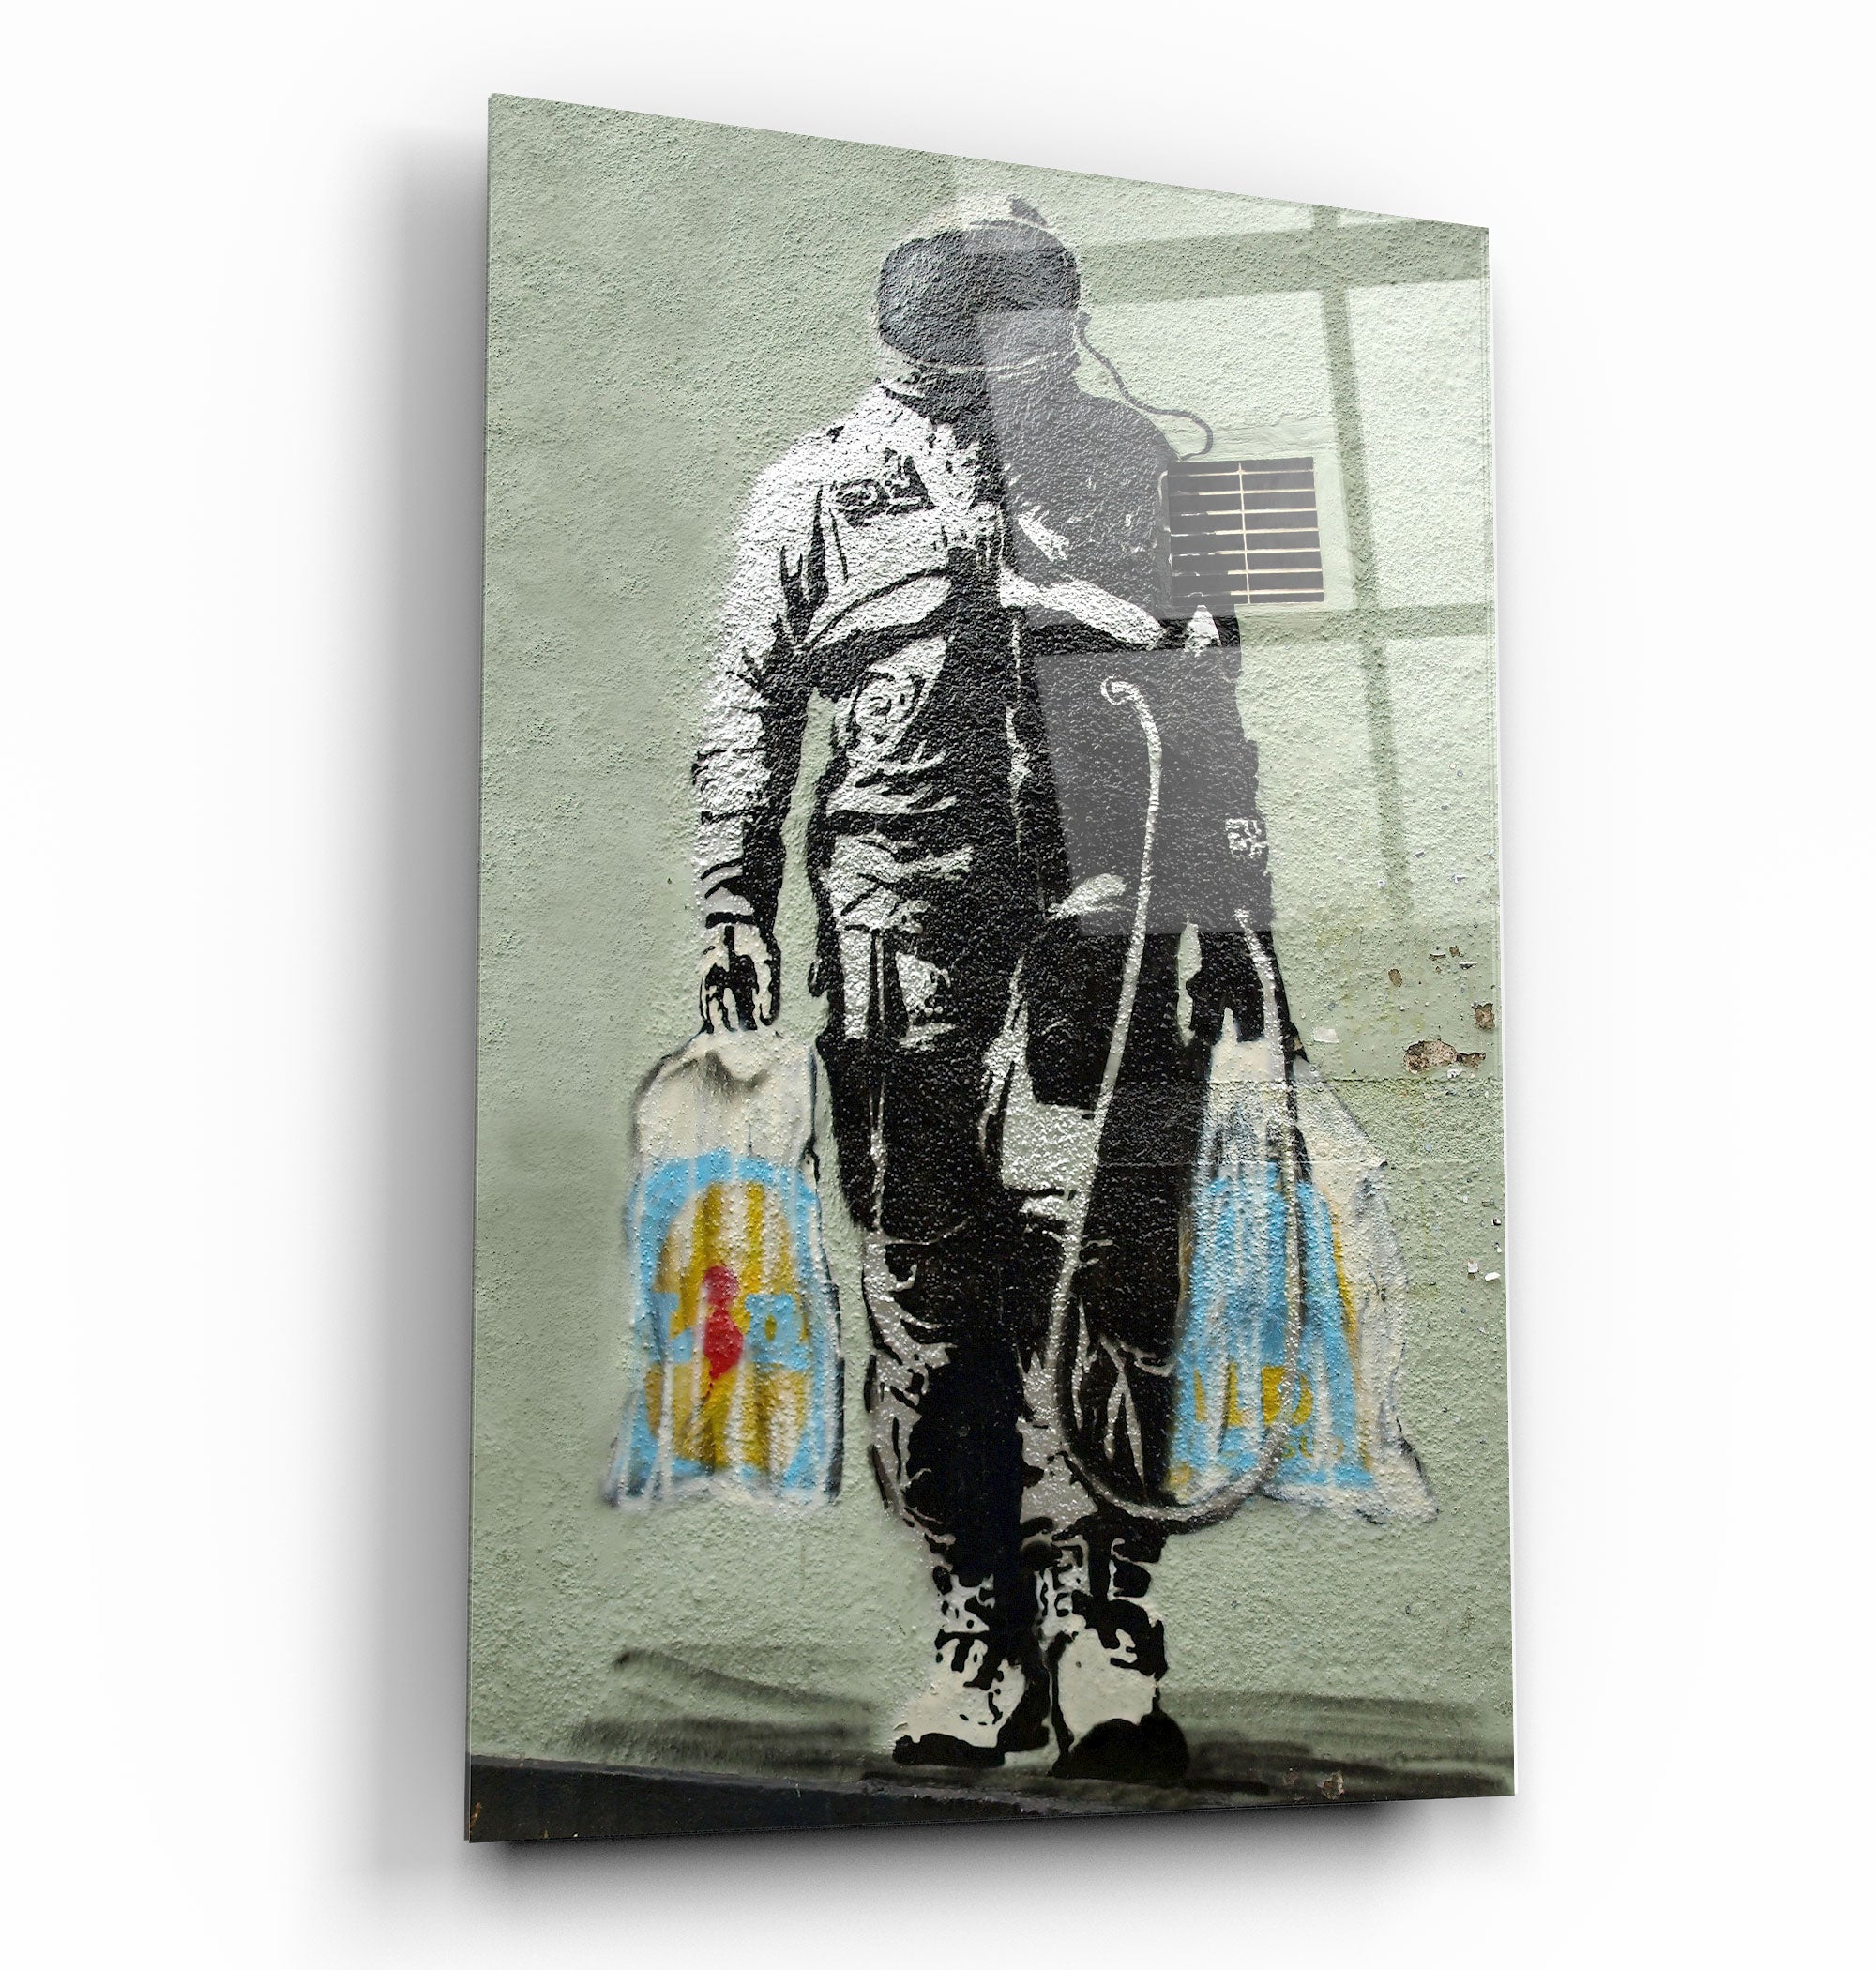 ・"Banksy - Shopper Spaceman"・Glass Wall Art